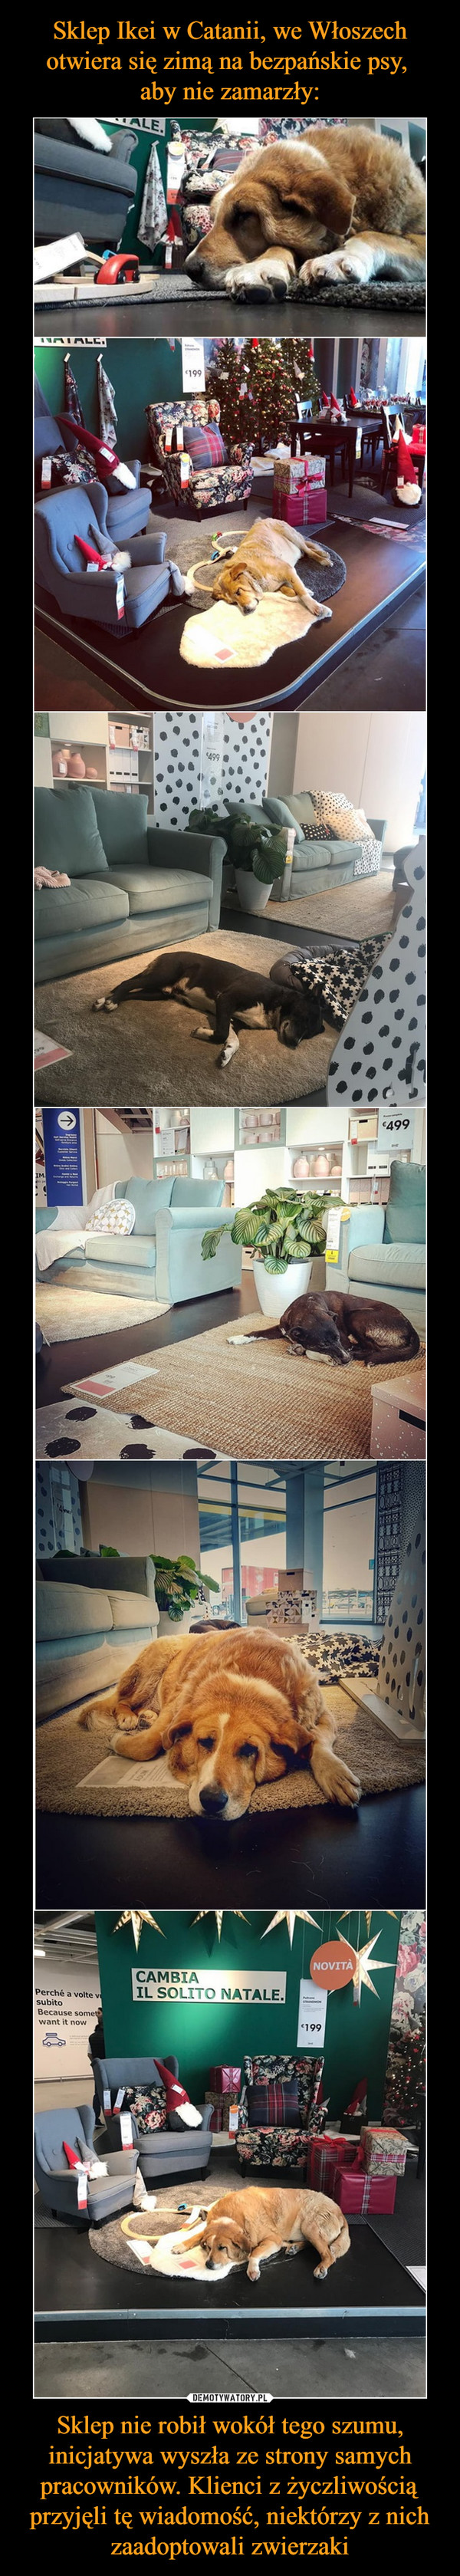 Sklep Ikei w Catanii, we Włoszech otwiera się zimą na bezpańskie psy, 
aby nie zamarzły: Sklep nie robił wokół tego szumu, inicjatywa wyszła ze strony samych pracowników. Klienci z życzliwością przyjęli tę wiadomość, niektórzy z nich zaadoptowali zwierzaki